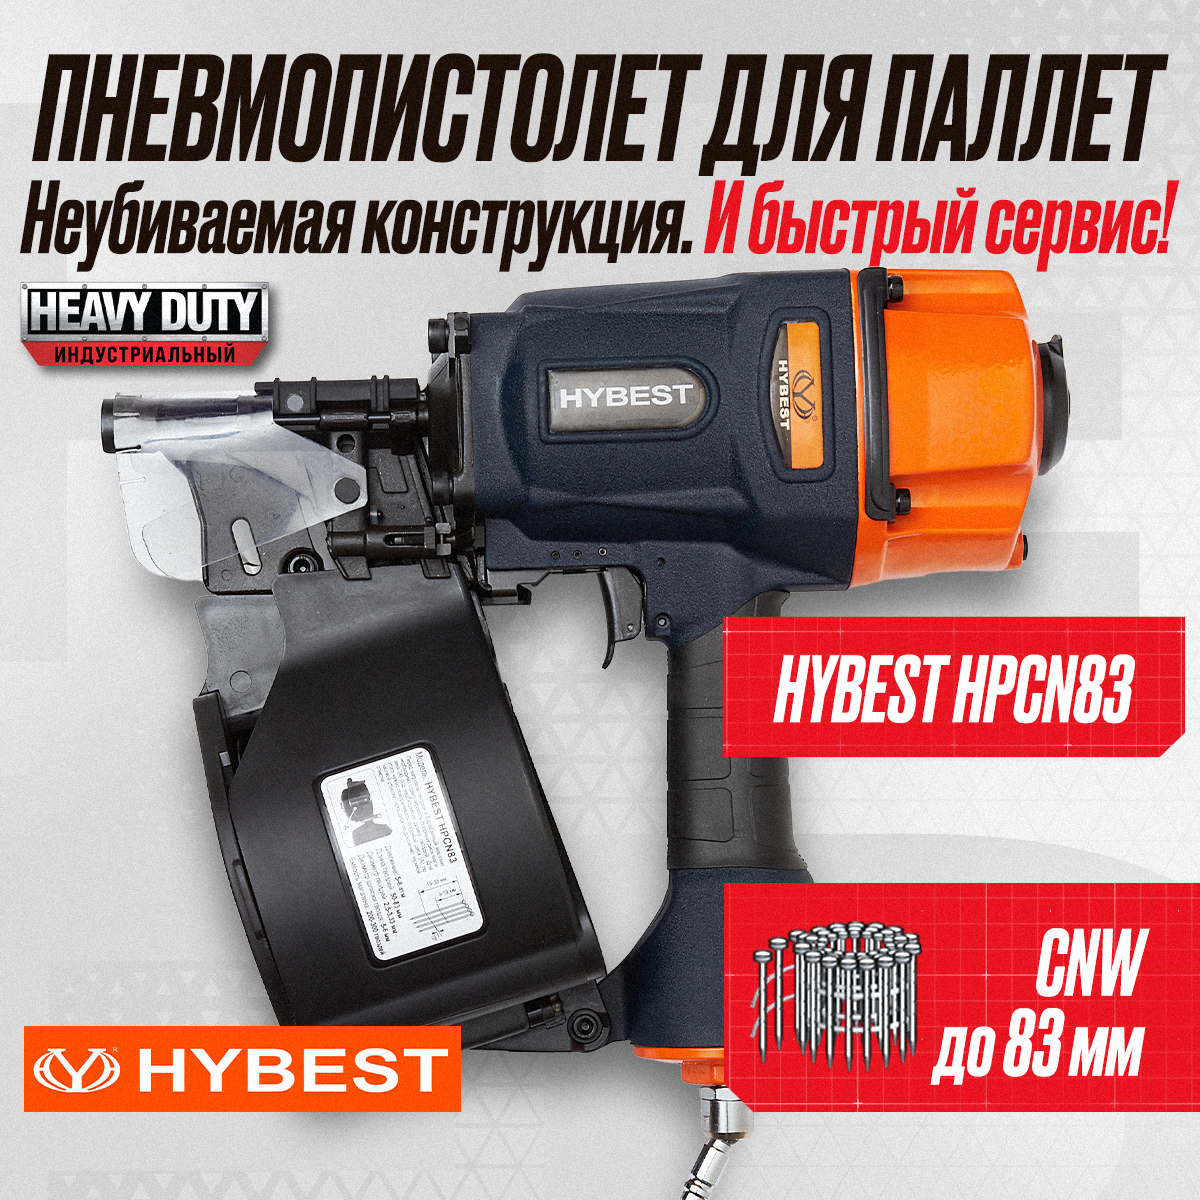 Пневматический монтажный пистолет Hybest HPCN83 2